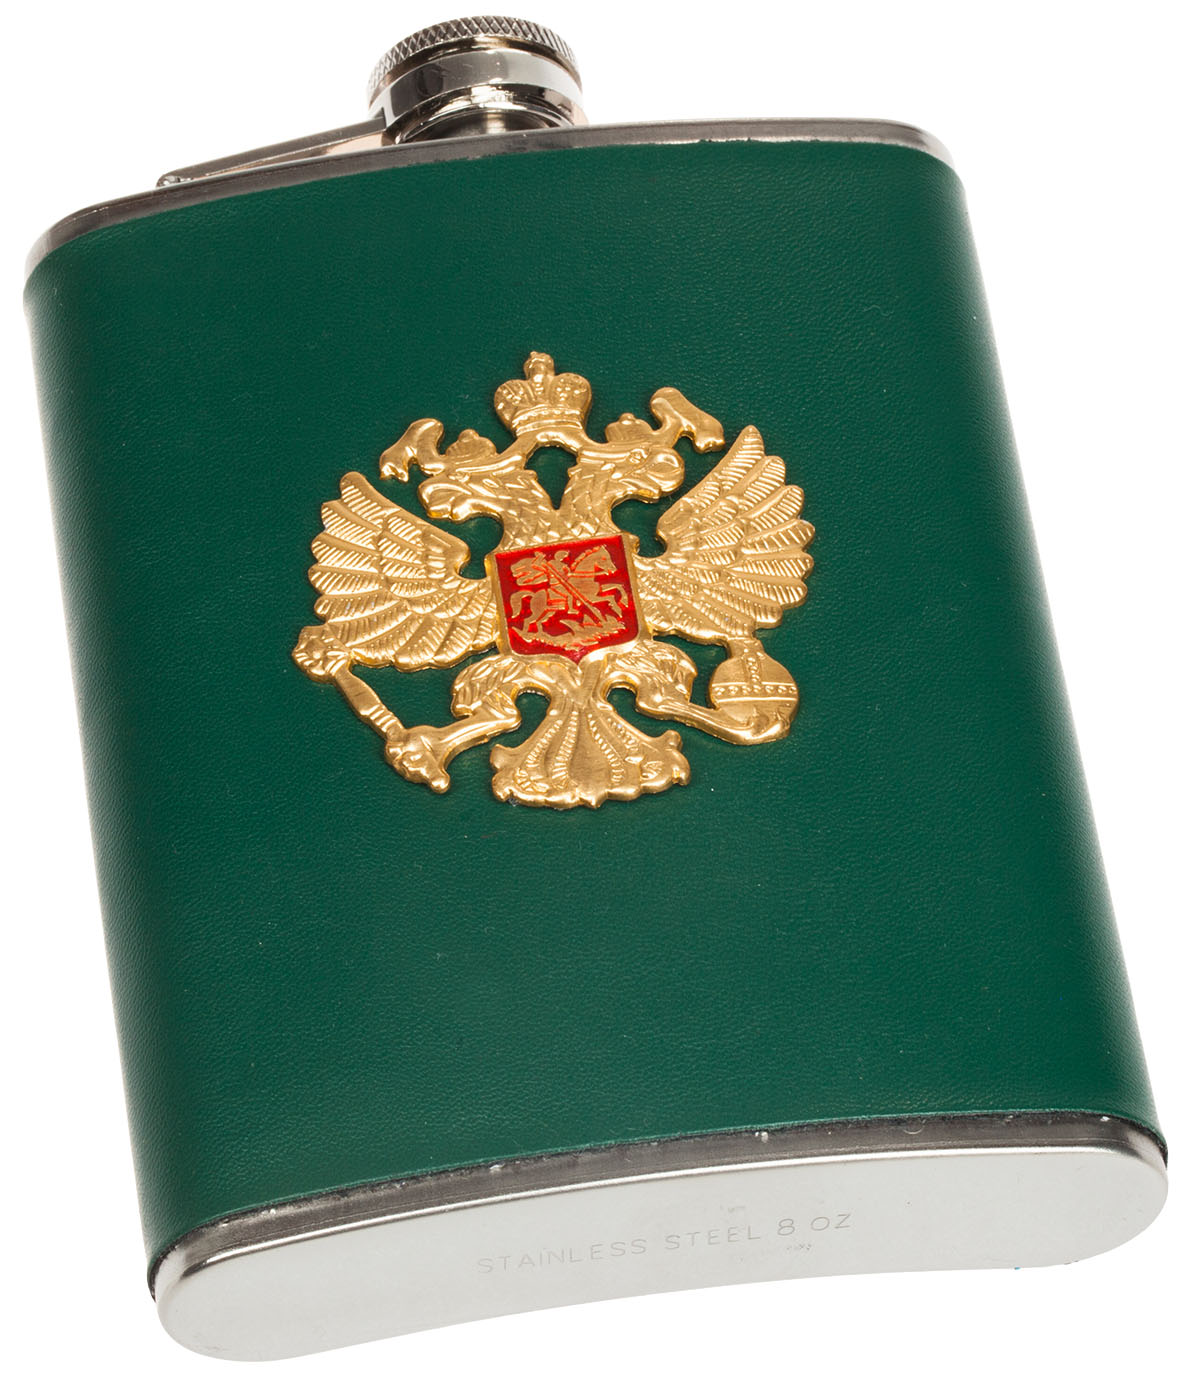 Заказать фляжку для алкоголя "Герб России" в подарок патриоту